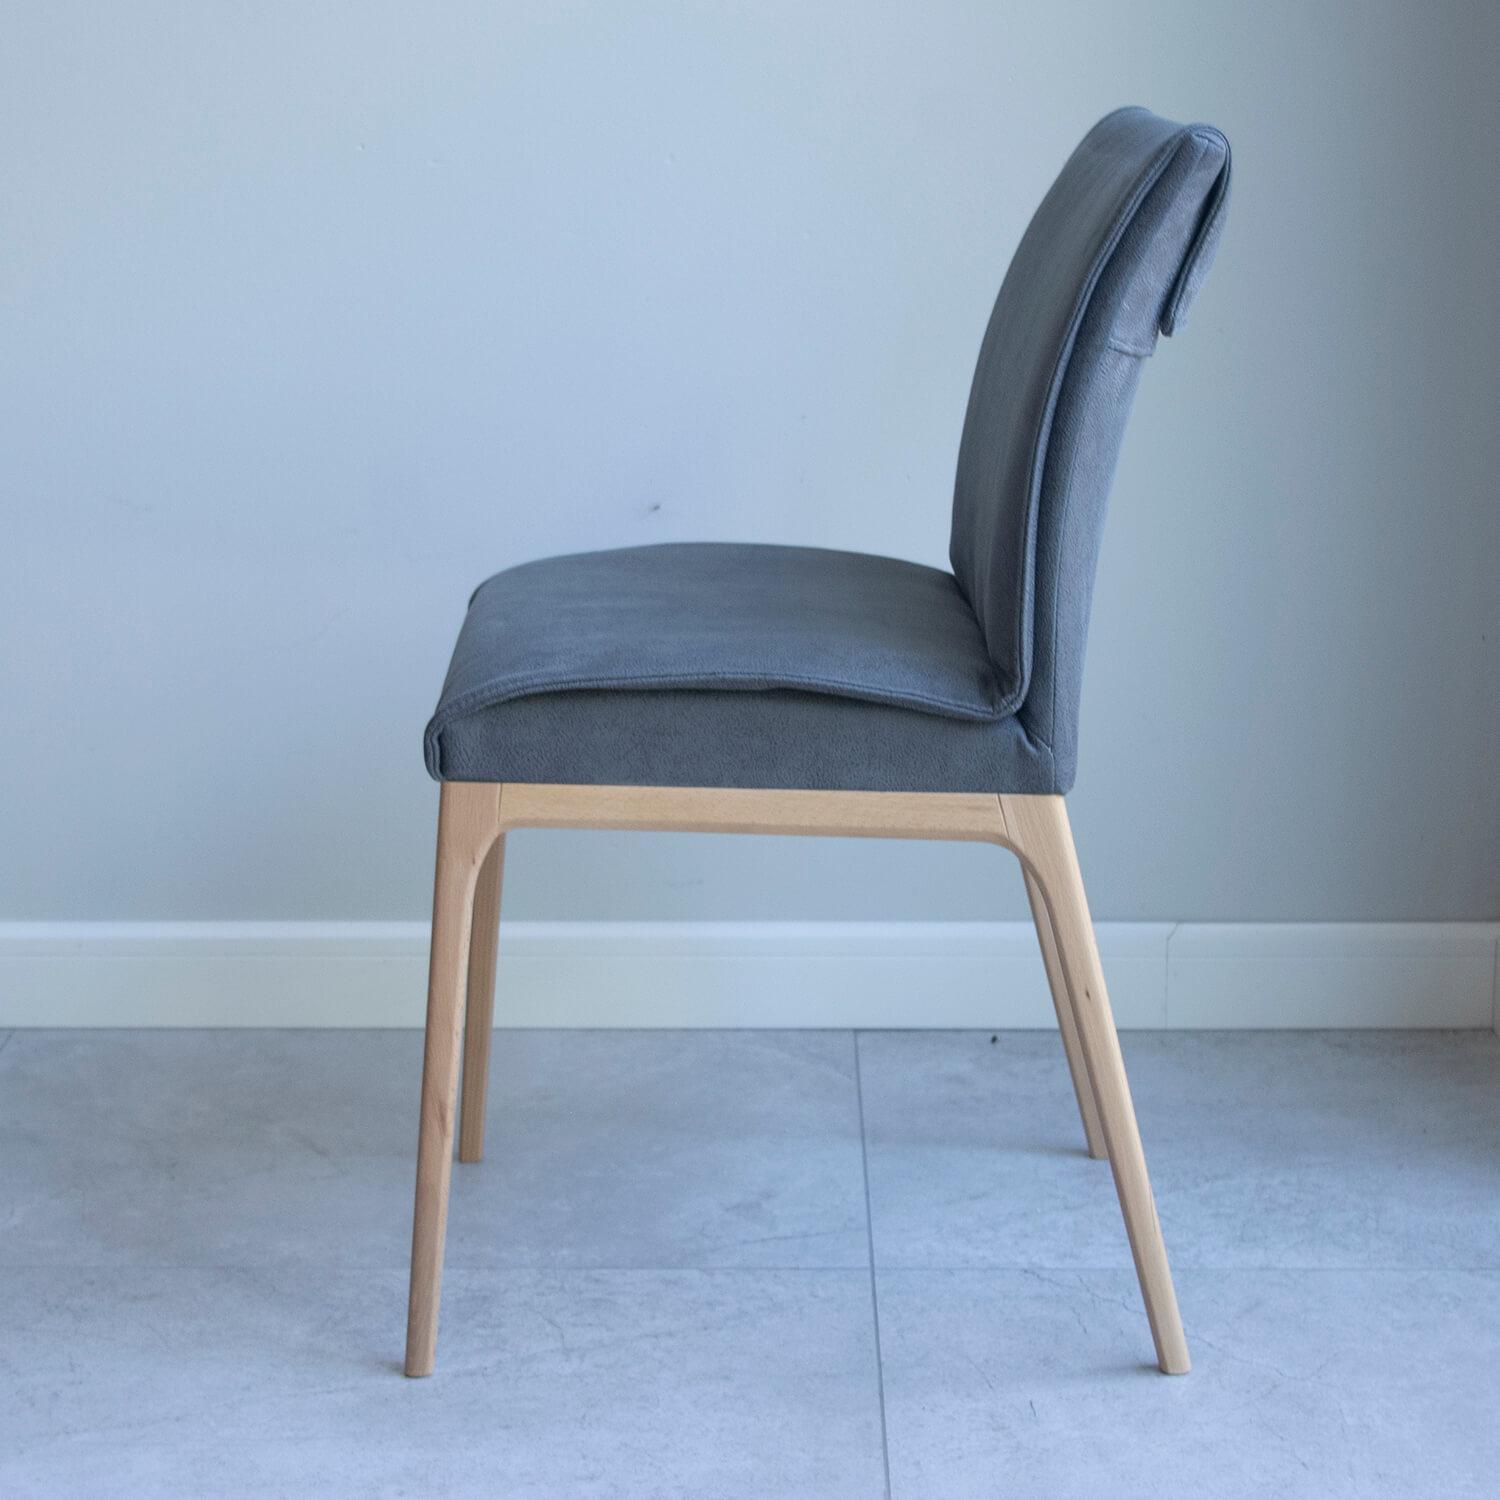 szare nowoczesne krzesł| z drewnianymi nogami w stylu skandynawskim, krzesło w materiale alantara